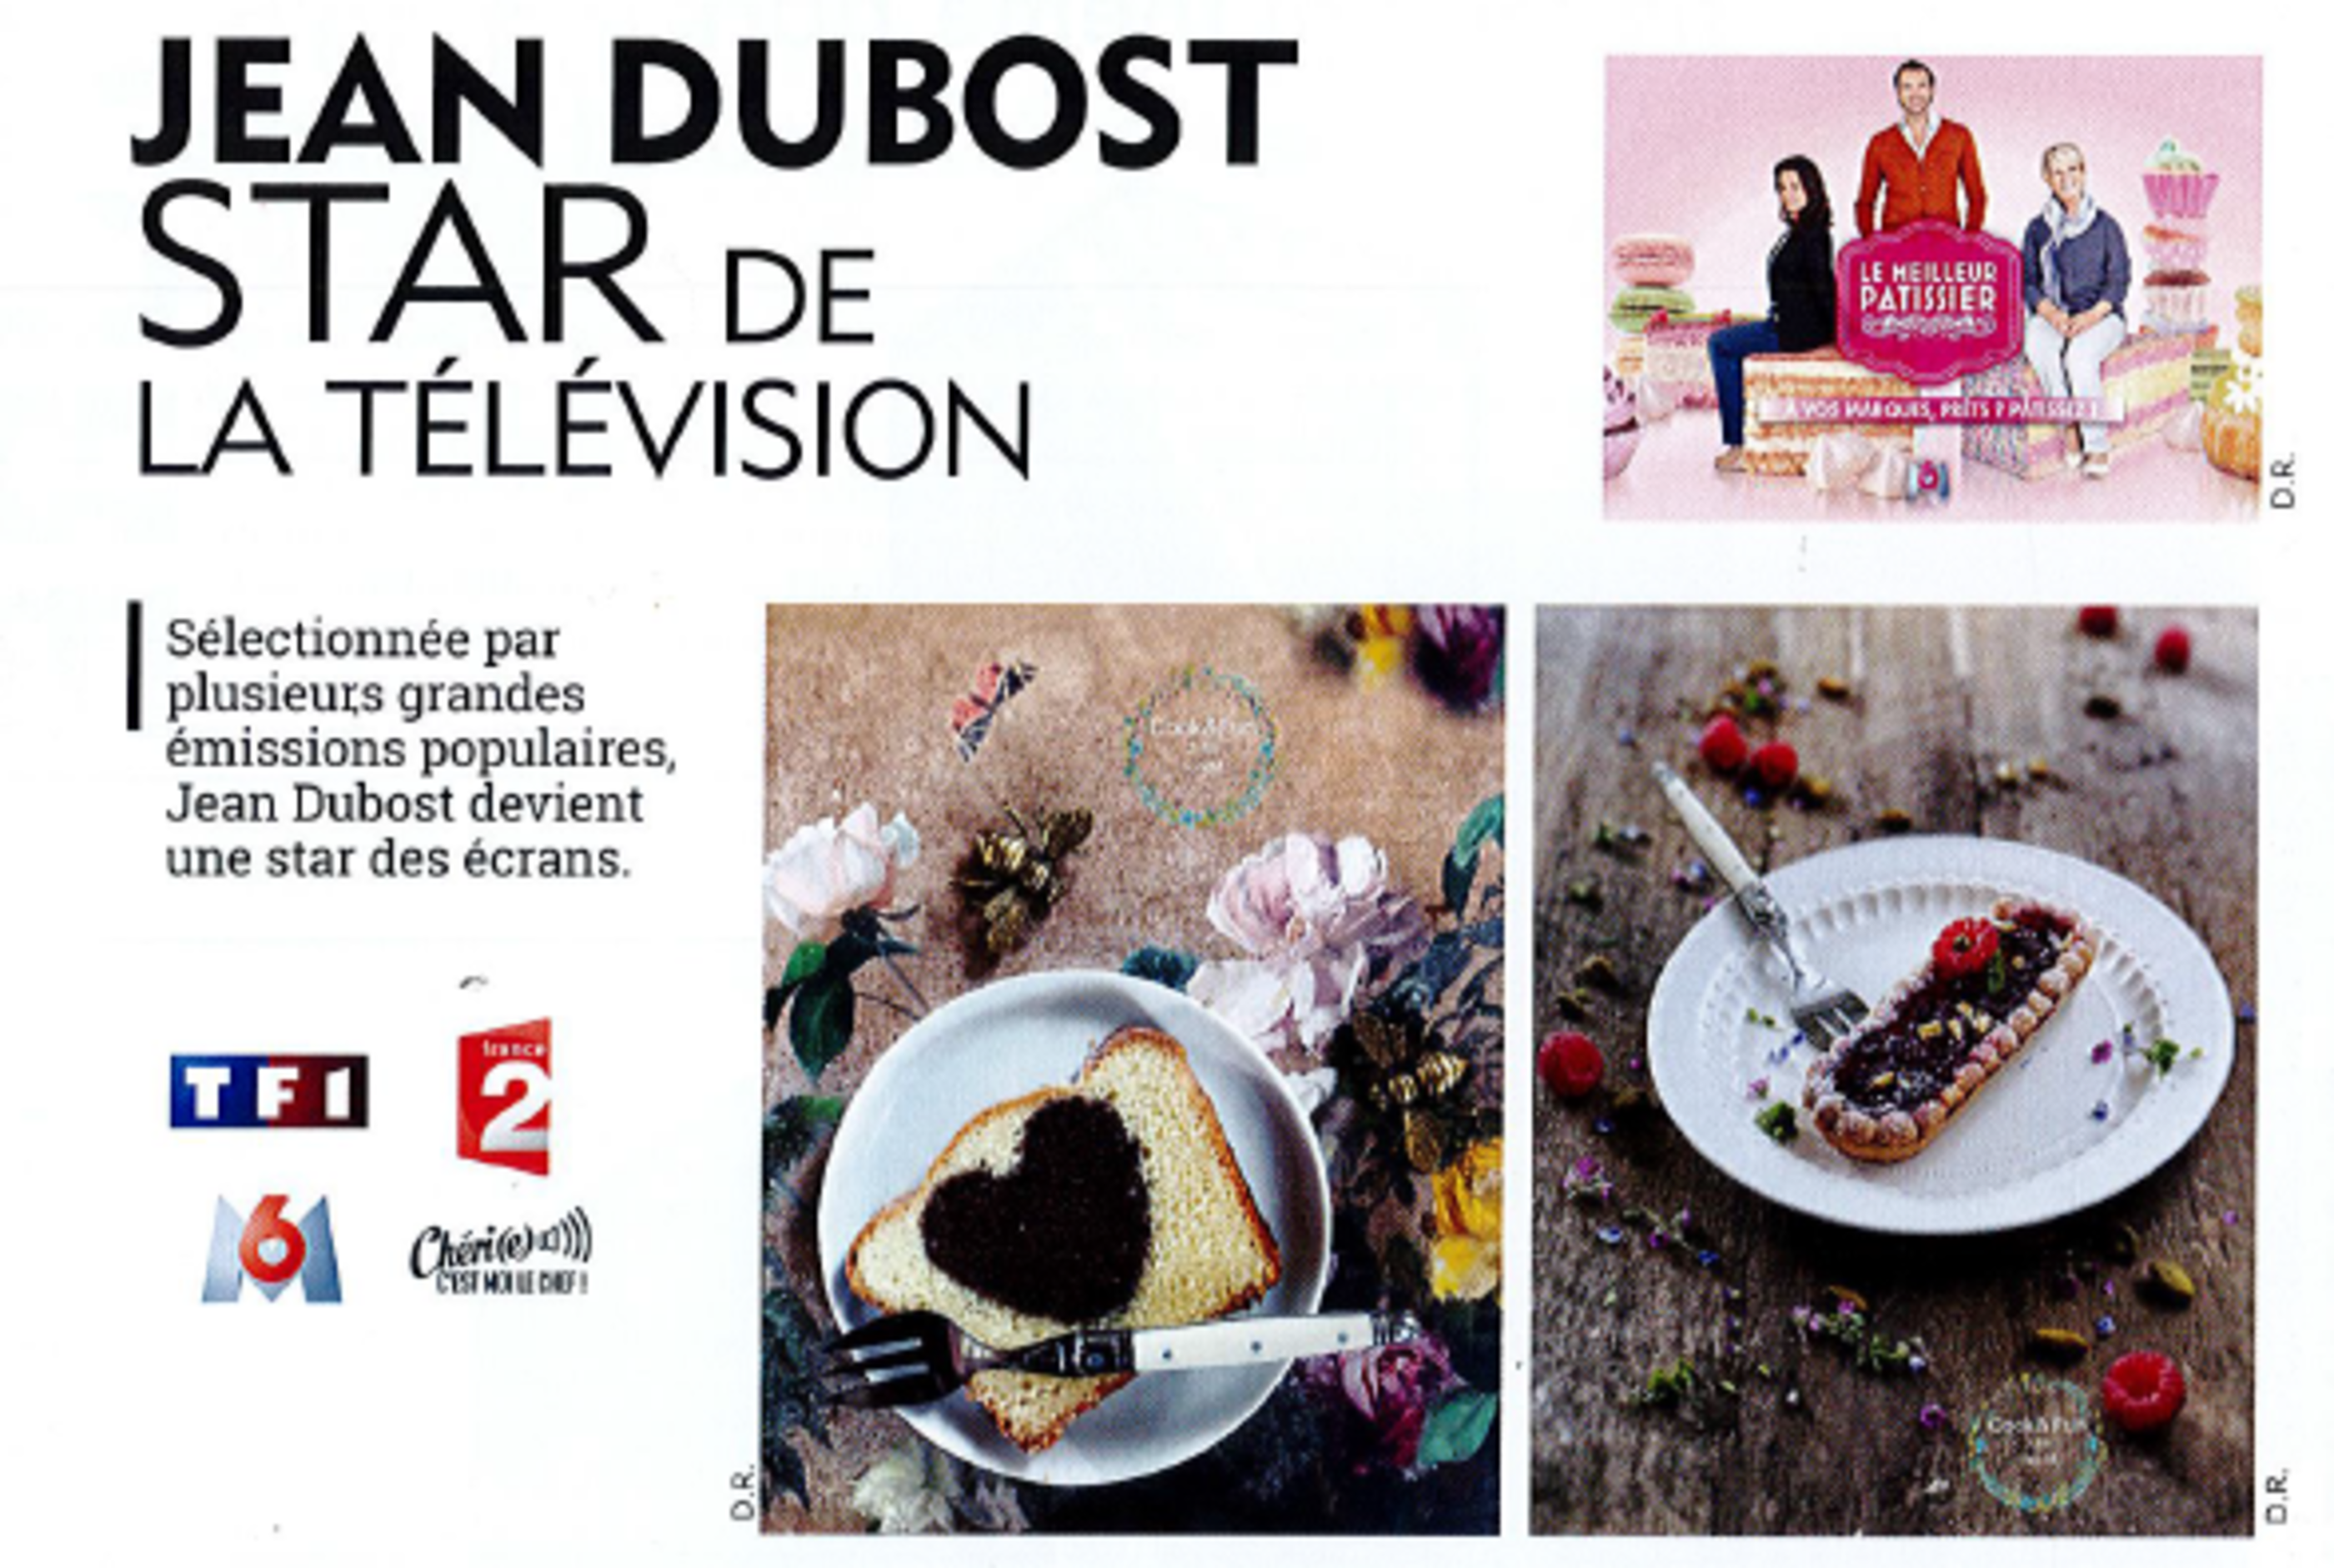 Jean Dubost coutellerie française d'excellence sur vos écrans TV, Home Fashion News Aout-Octobre 2017